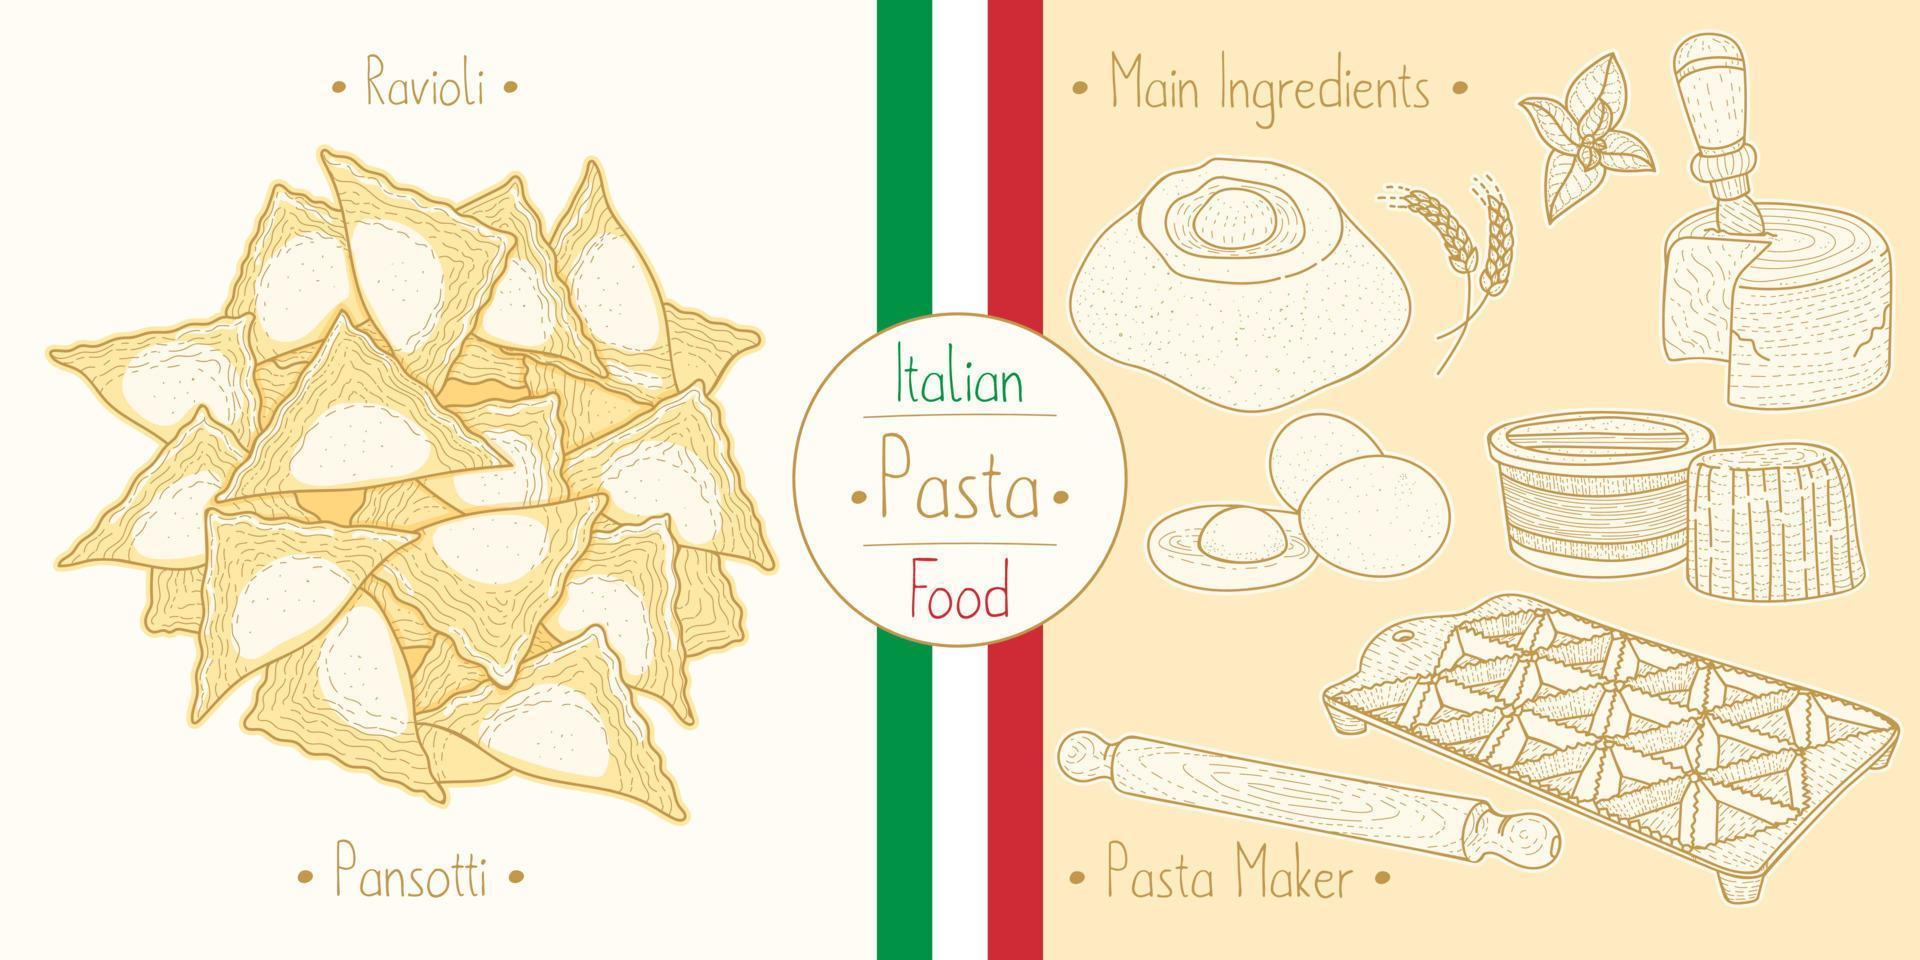 pasta de comida italiana con relleno de ravioli pansotti, ilustración de bocetos en el estilo vintage vector